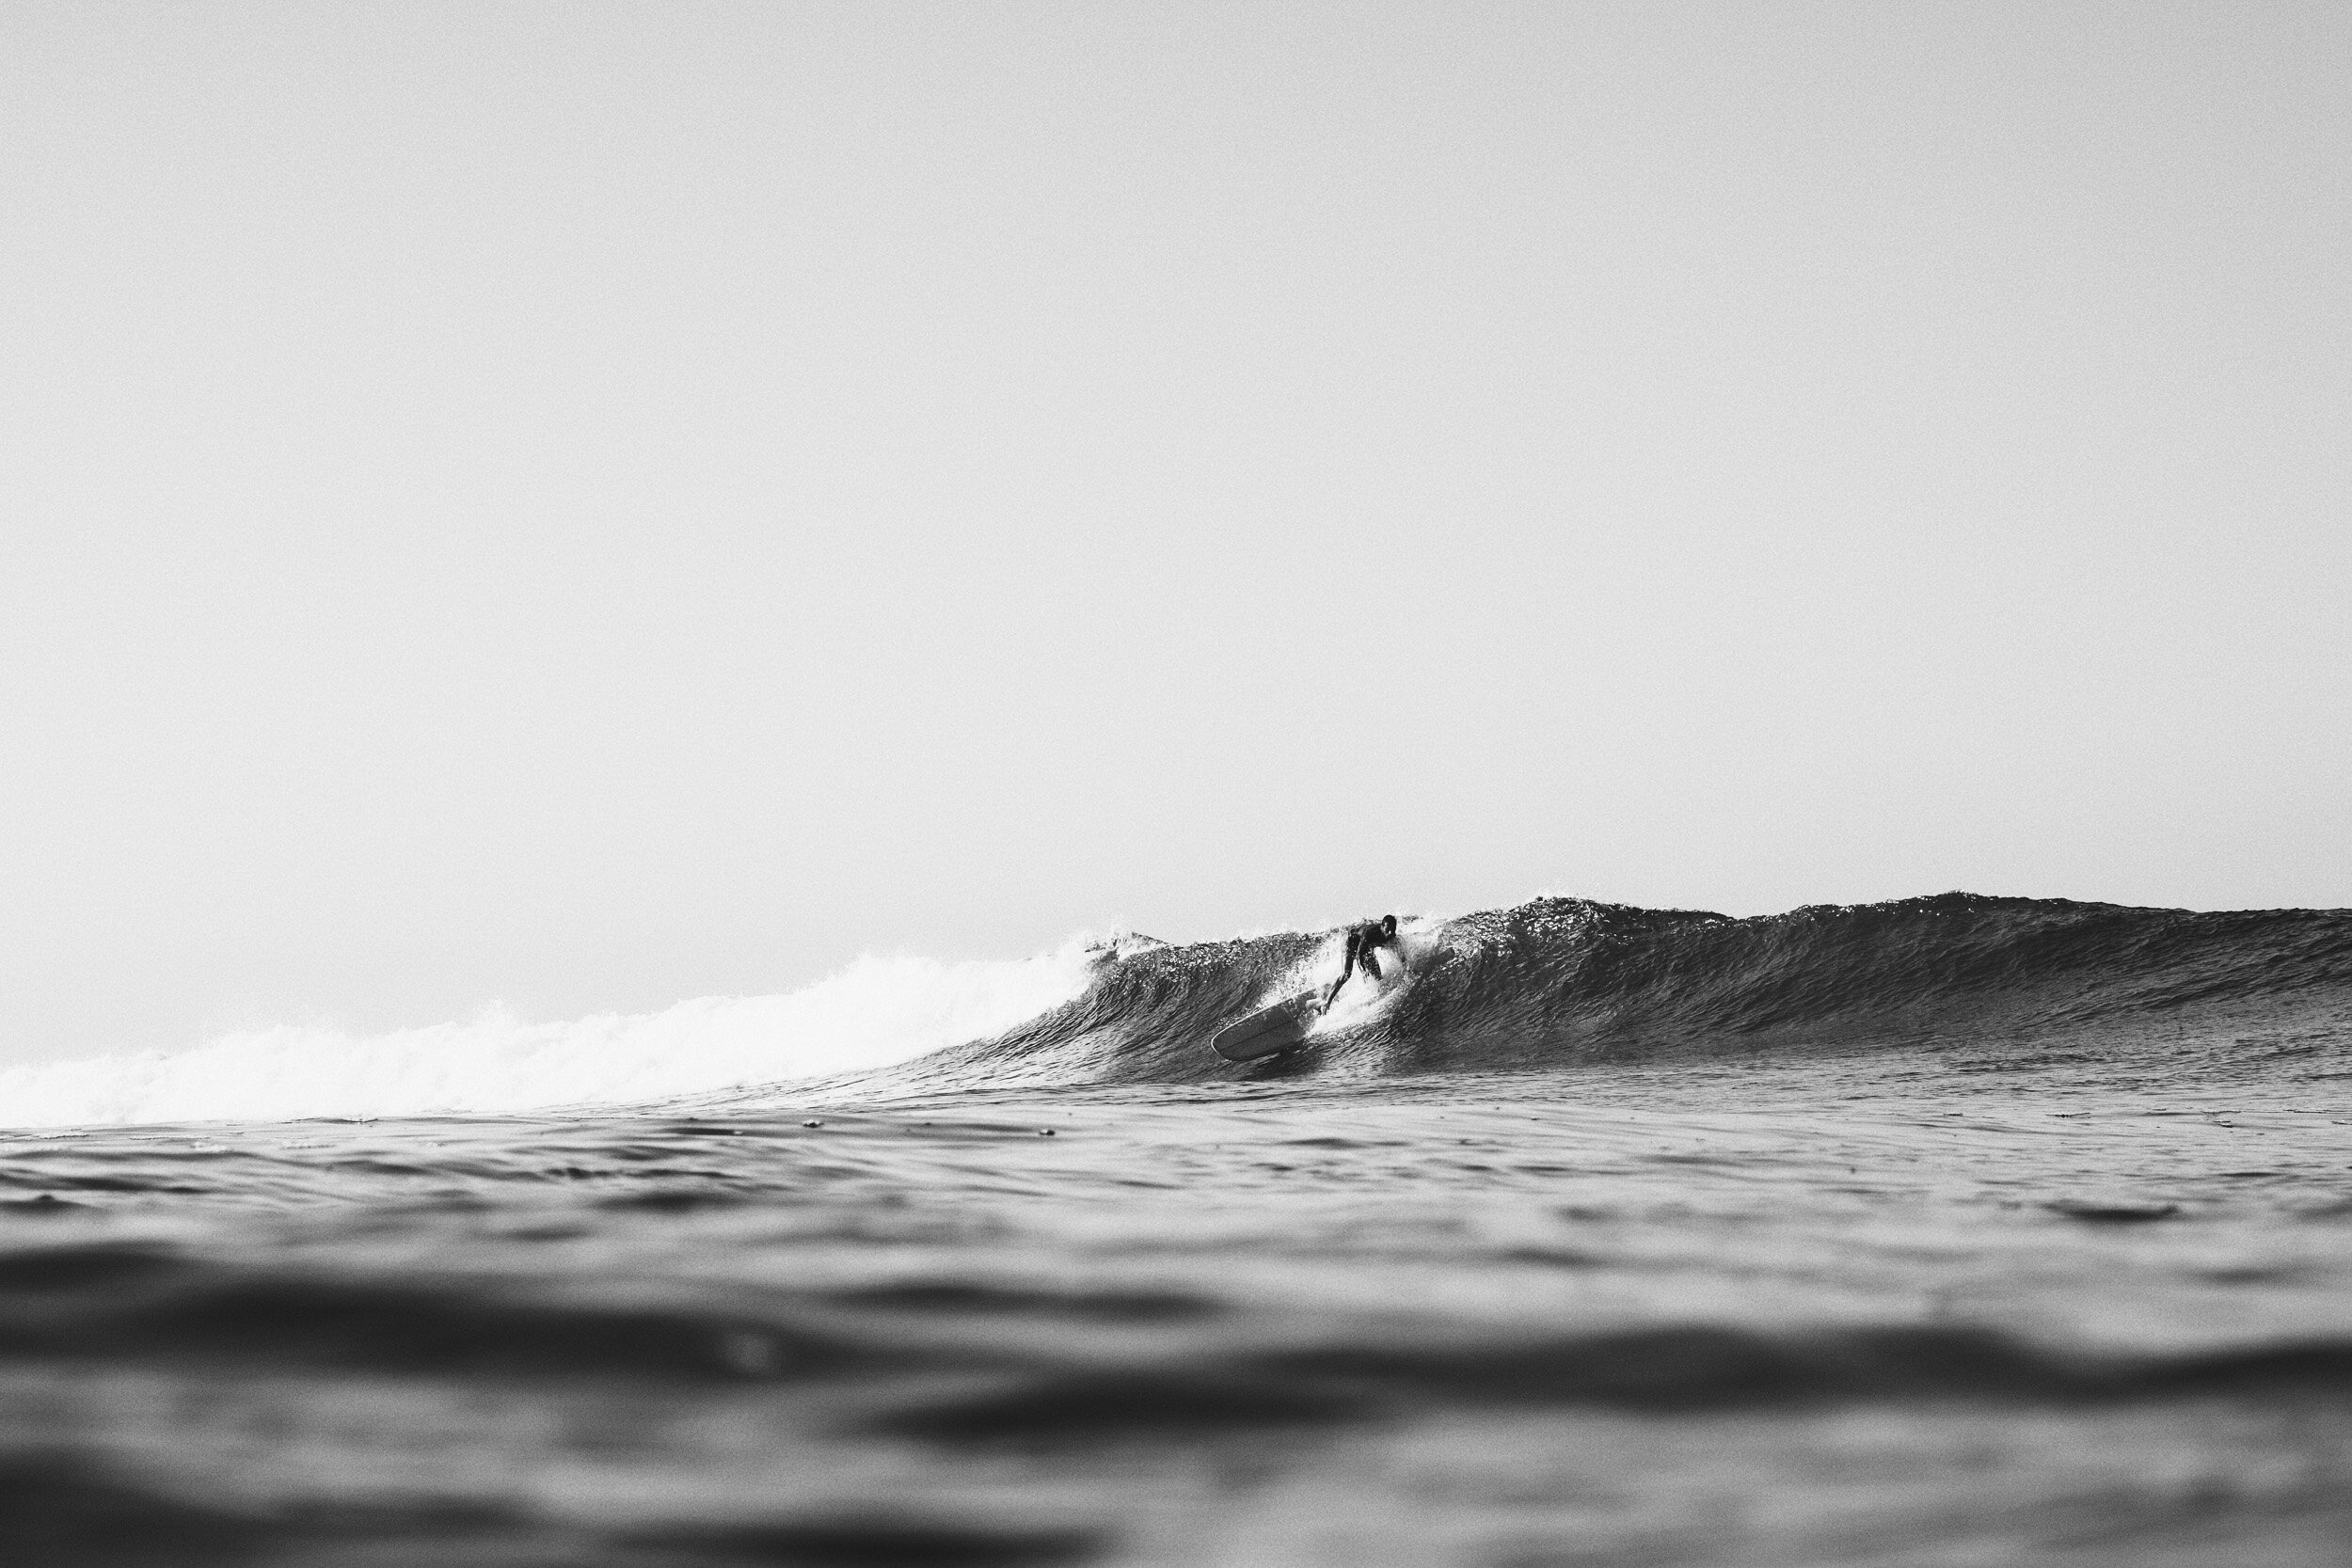 la-saladita-mexico-surf-longboard-fotografia-heiko-bothe-2.jpg